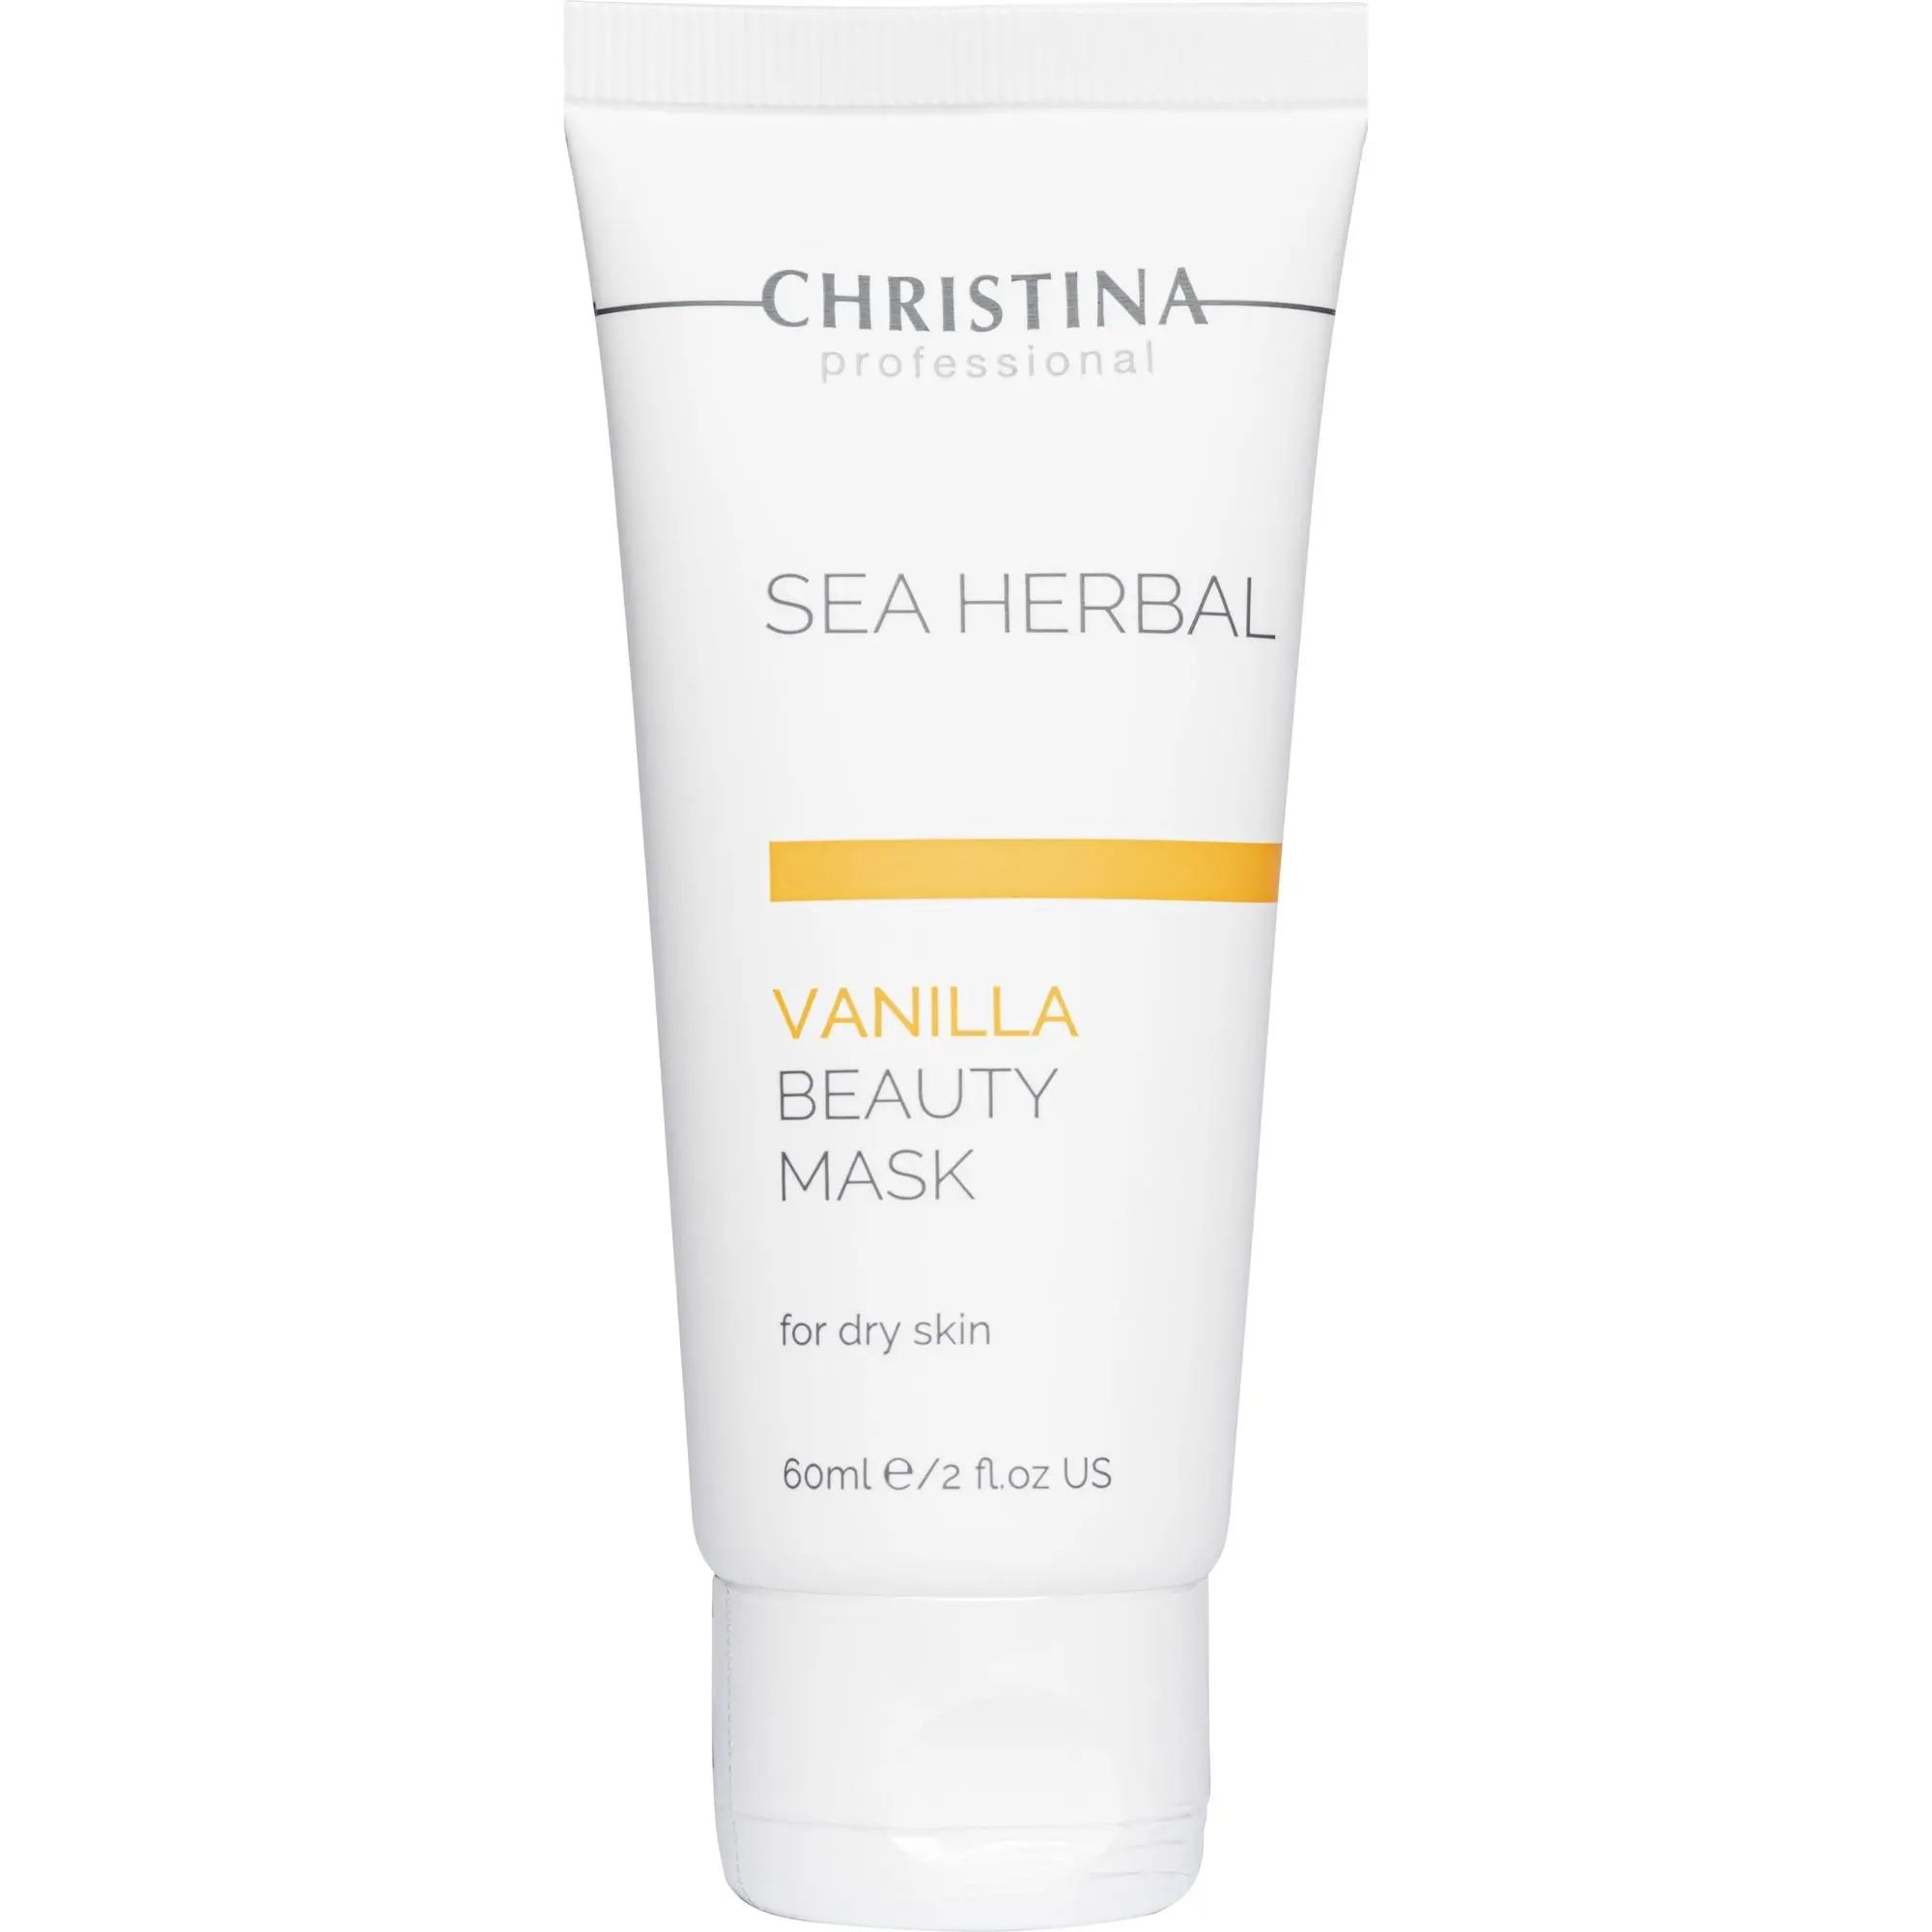 Зимний набор Christina Питание и увлажнение для сухой кожи: Увлажняющий крем 60 мл + Ванильная маска 60 мл - фото 3